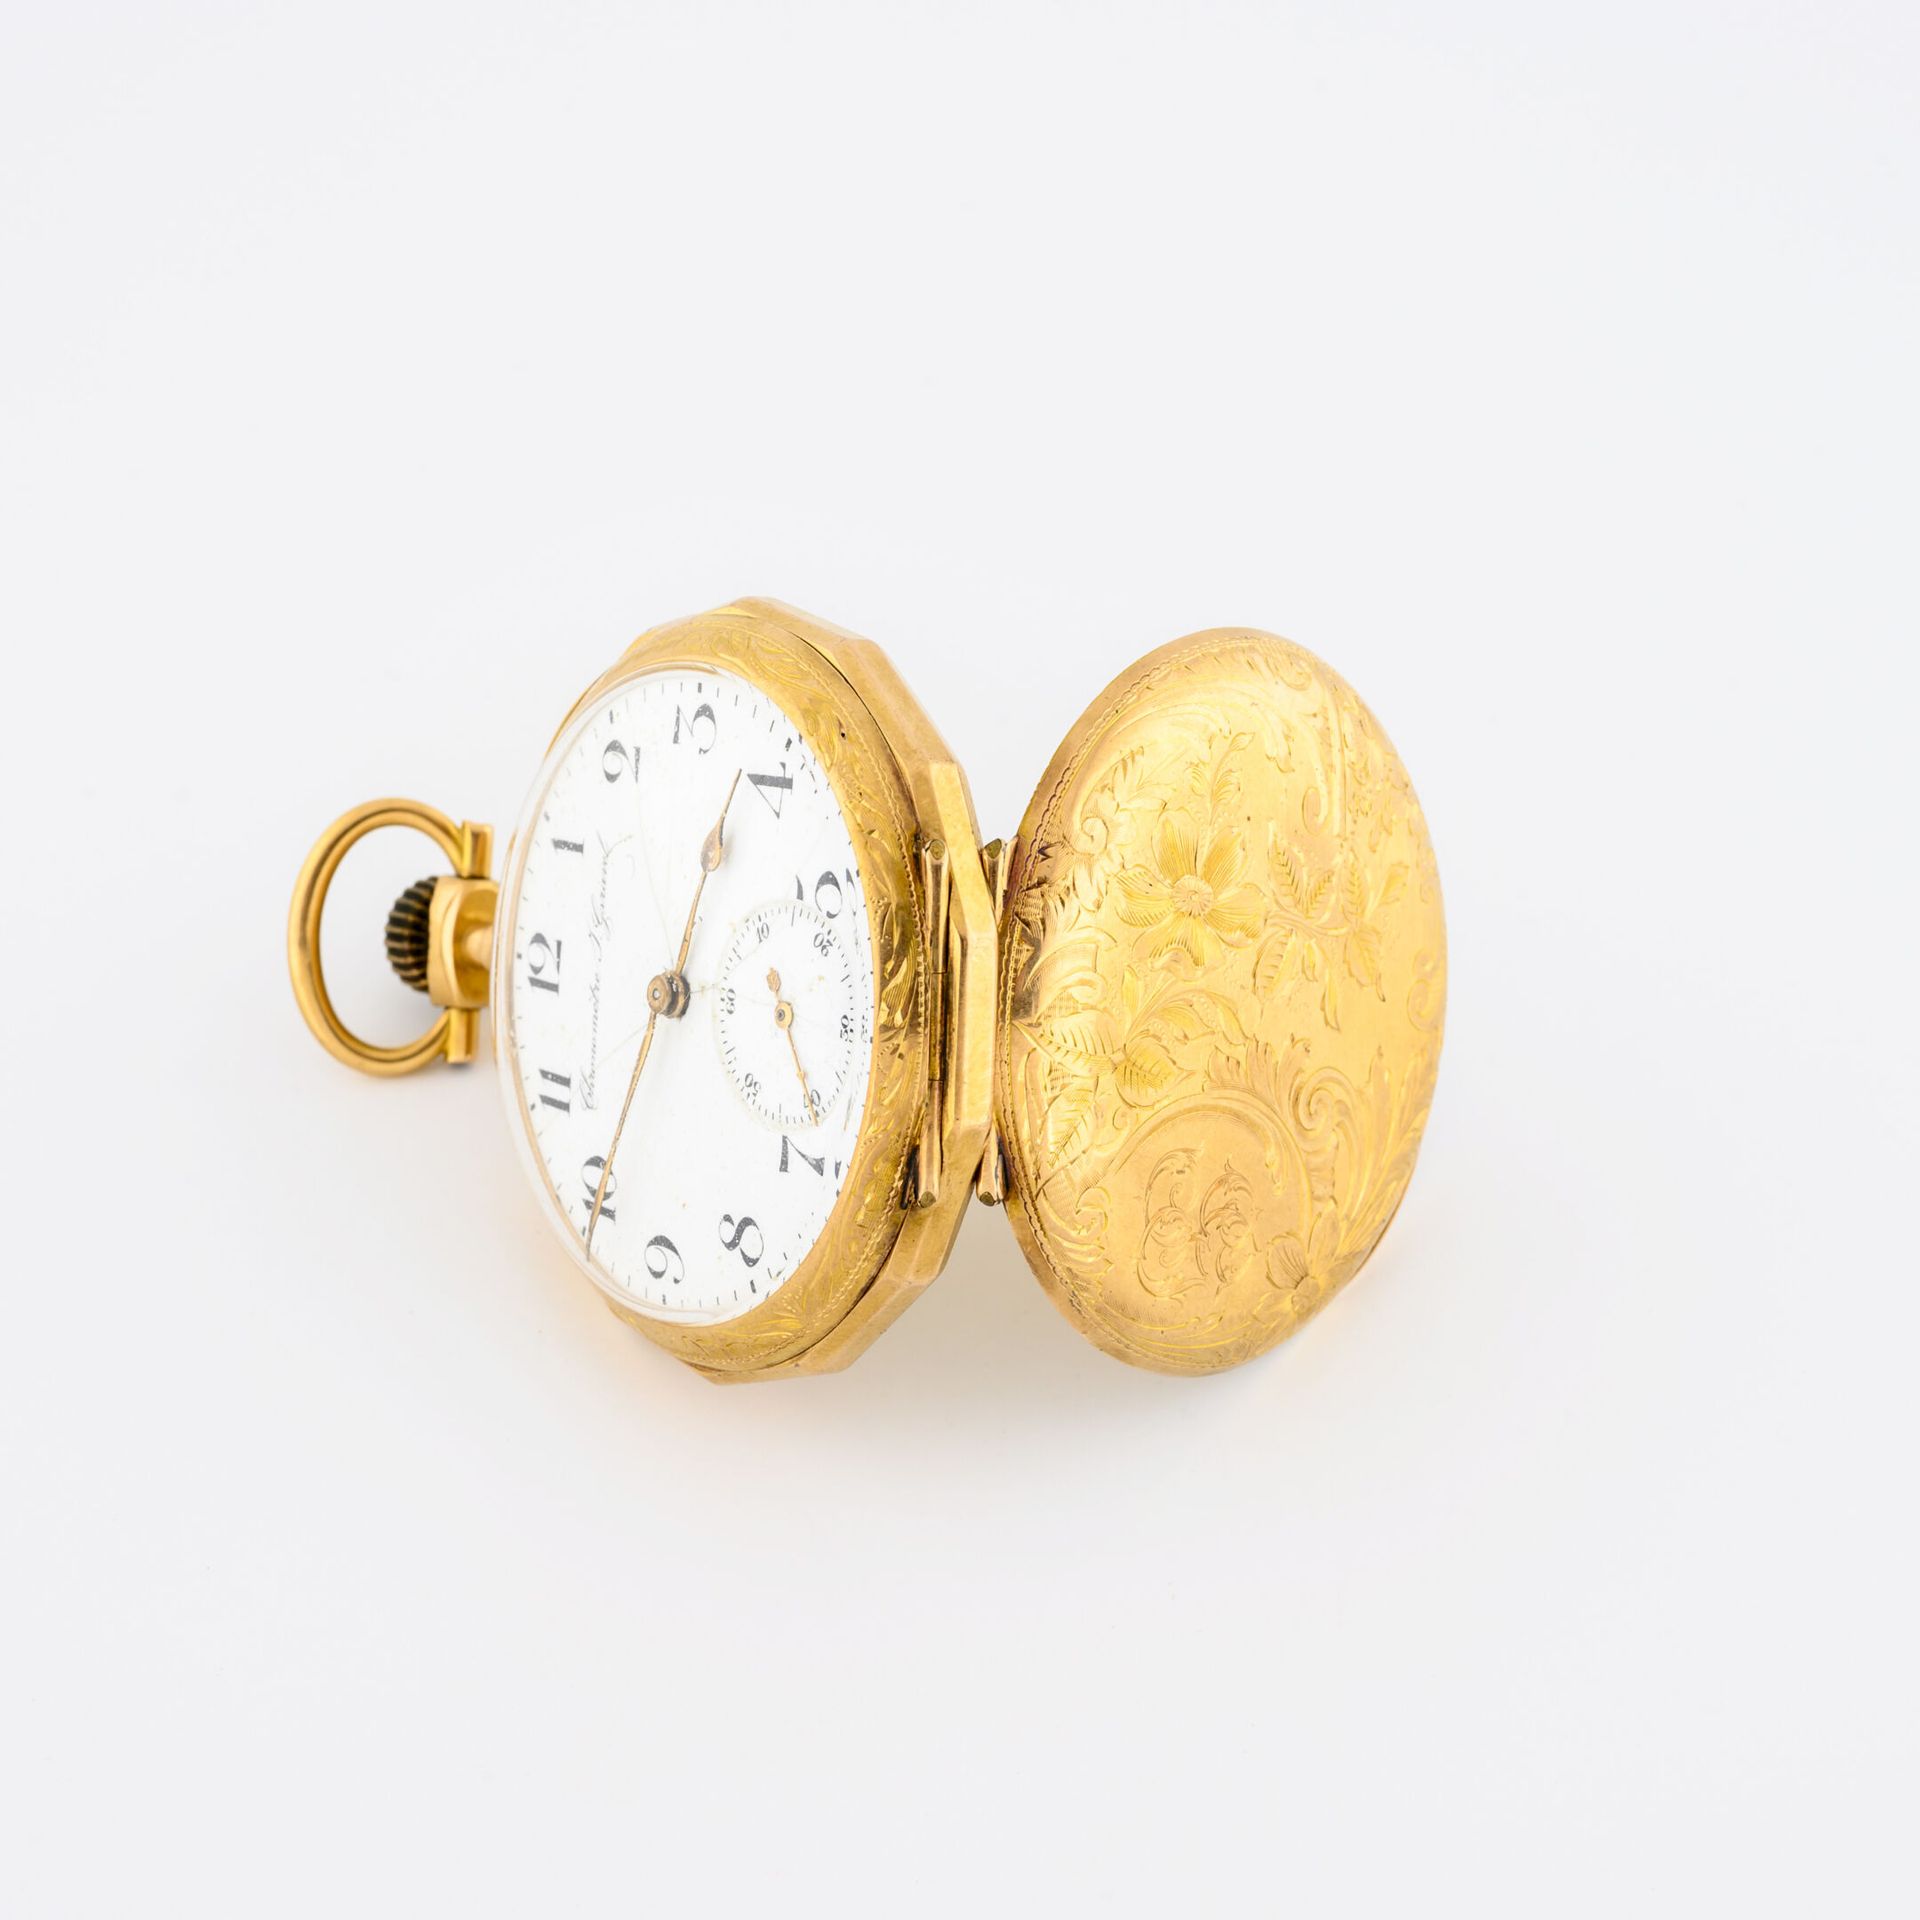 Chronomètre J.GARAVEL Orologio da tasca in oro giallo (750).

Copertina posterio&hellip;